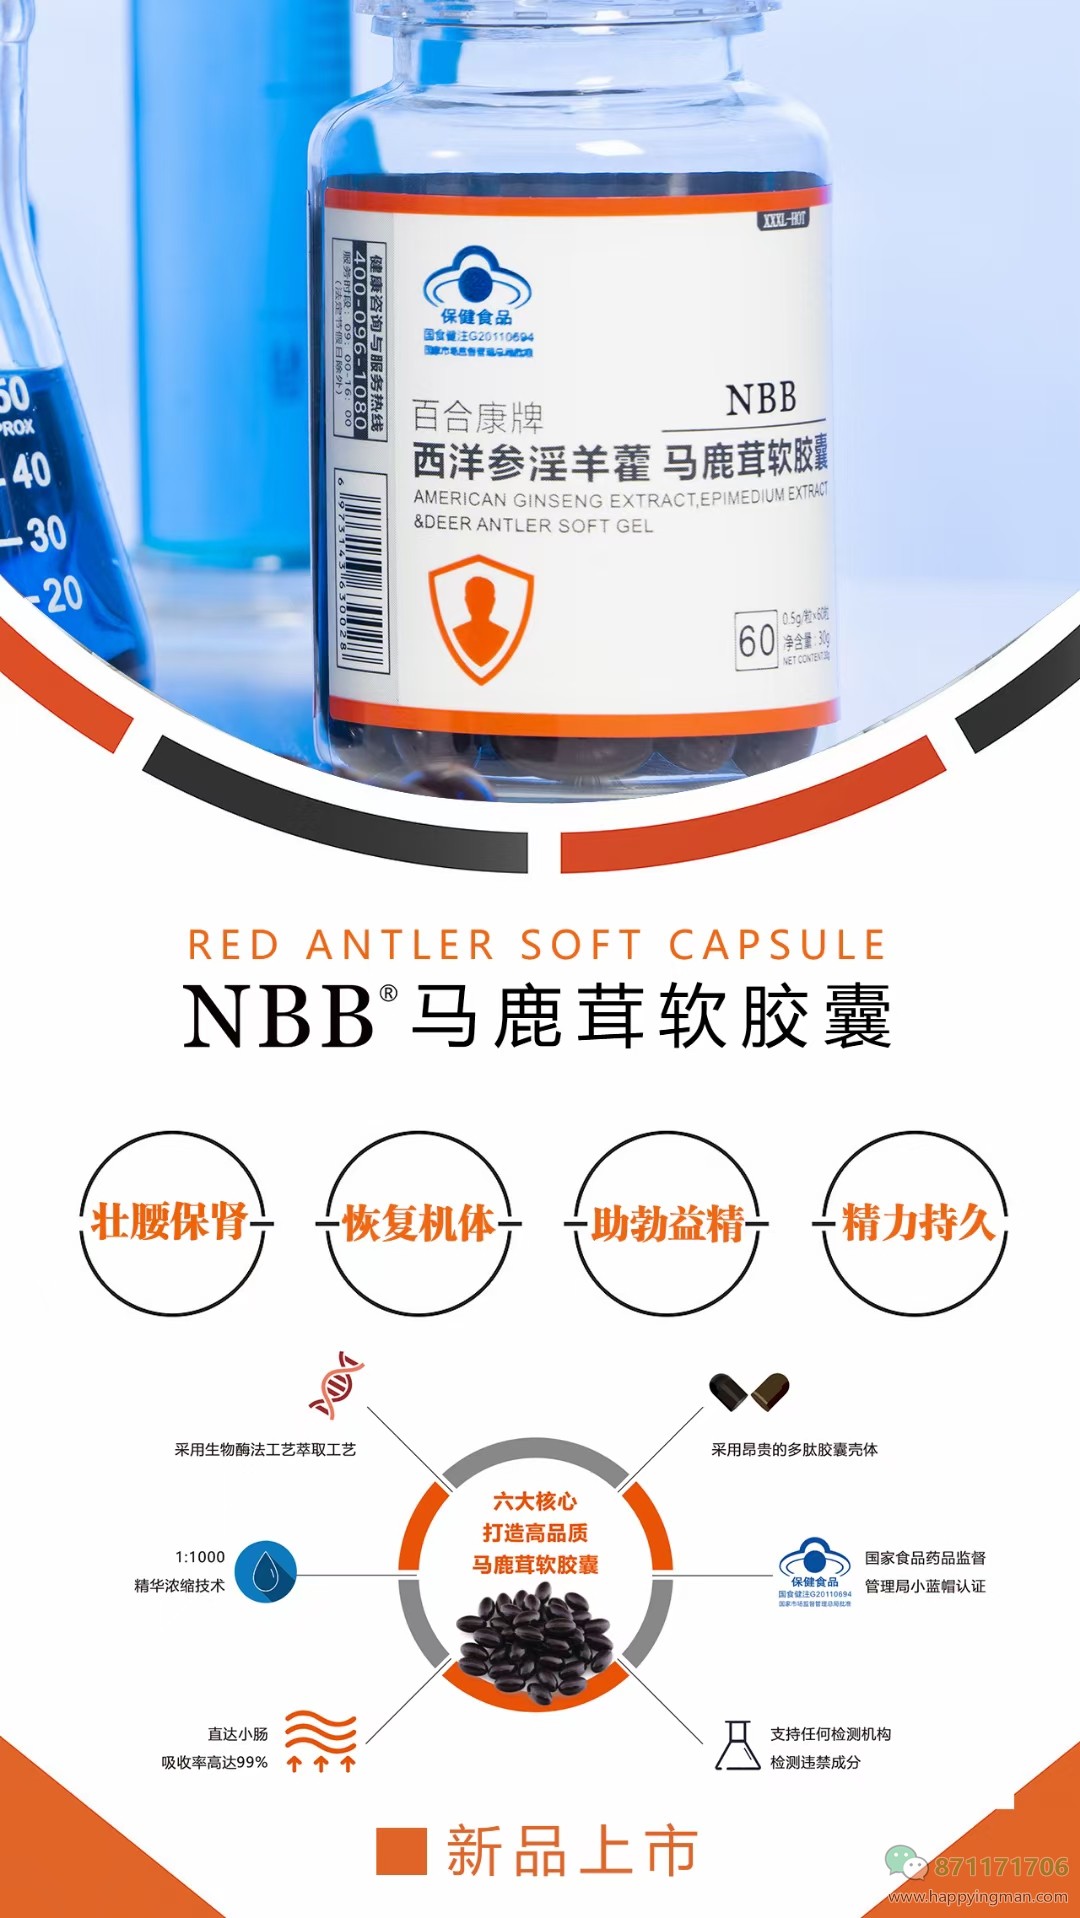 NBB新品『马鹿茸软胶囊』全球首发NBB首款口服产品，正式上市